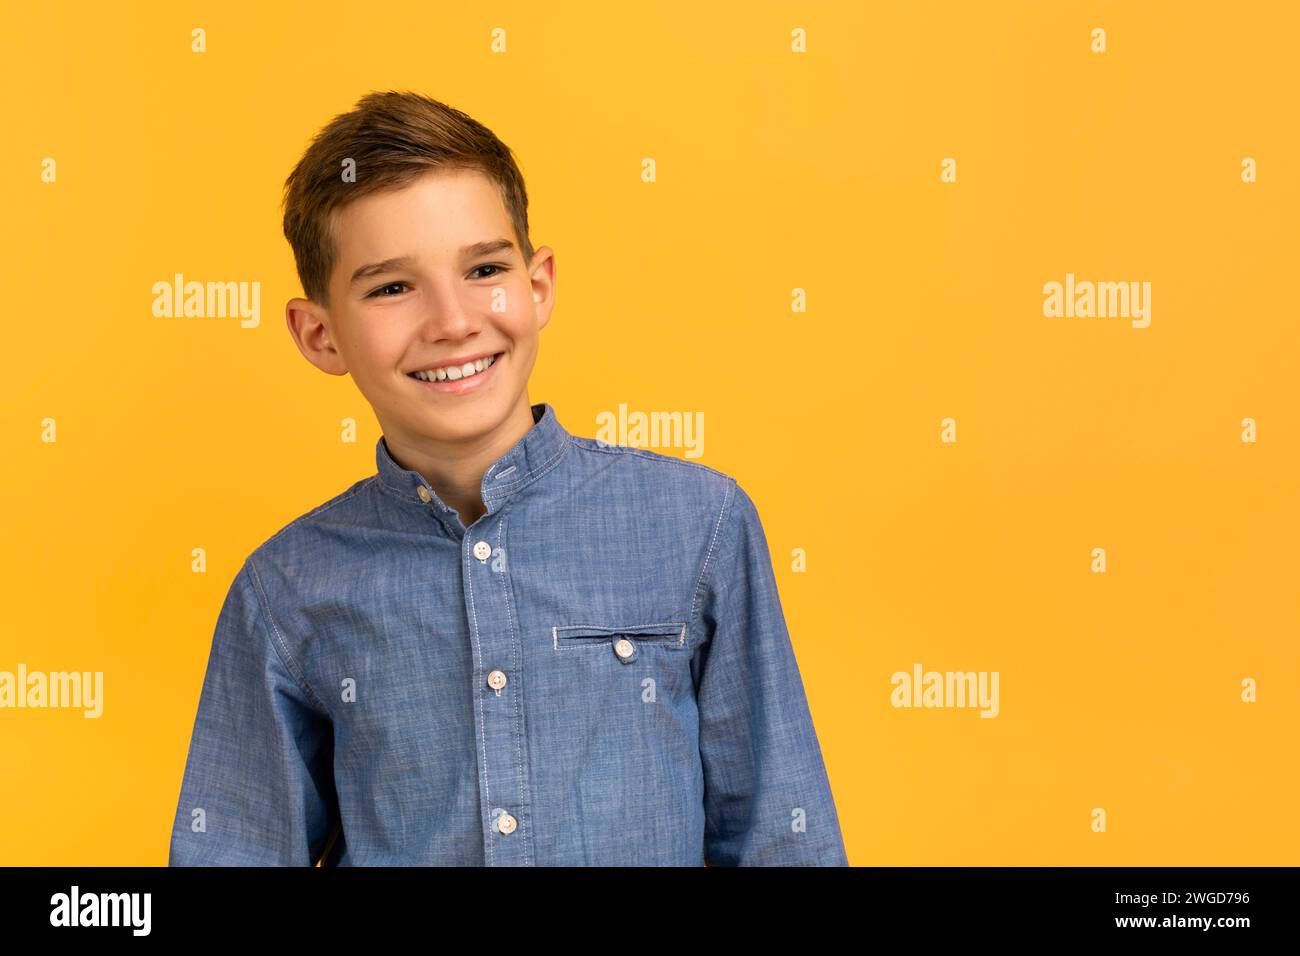 Adolescente felice in camicia in denim che posa con sicurezza su sfondo giallo in studio Foto Stock